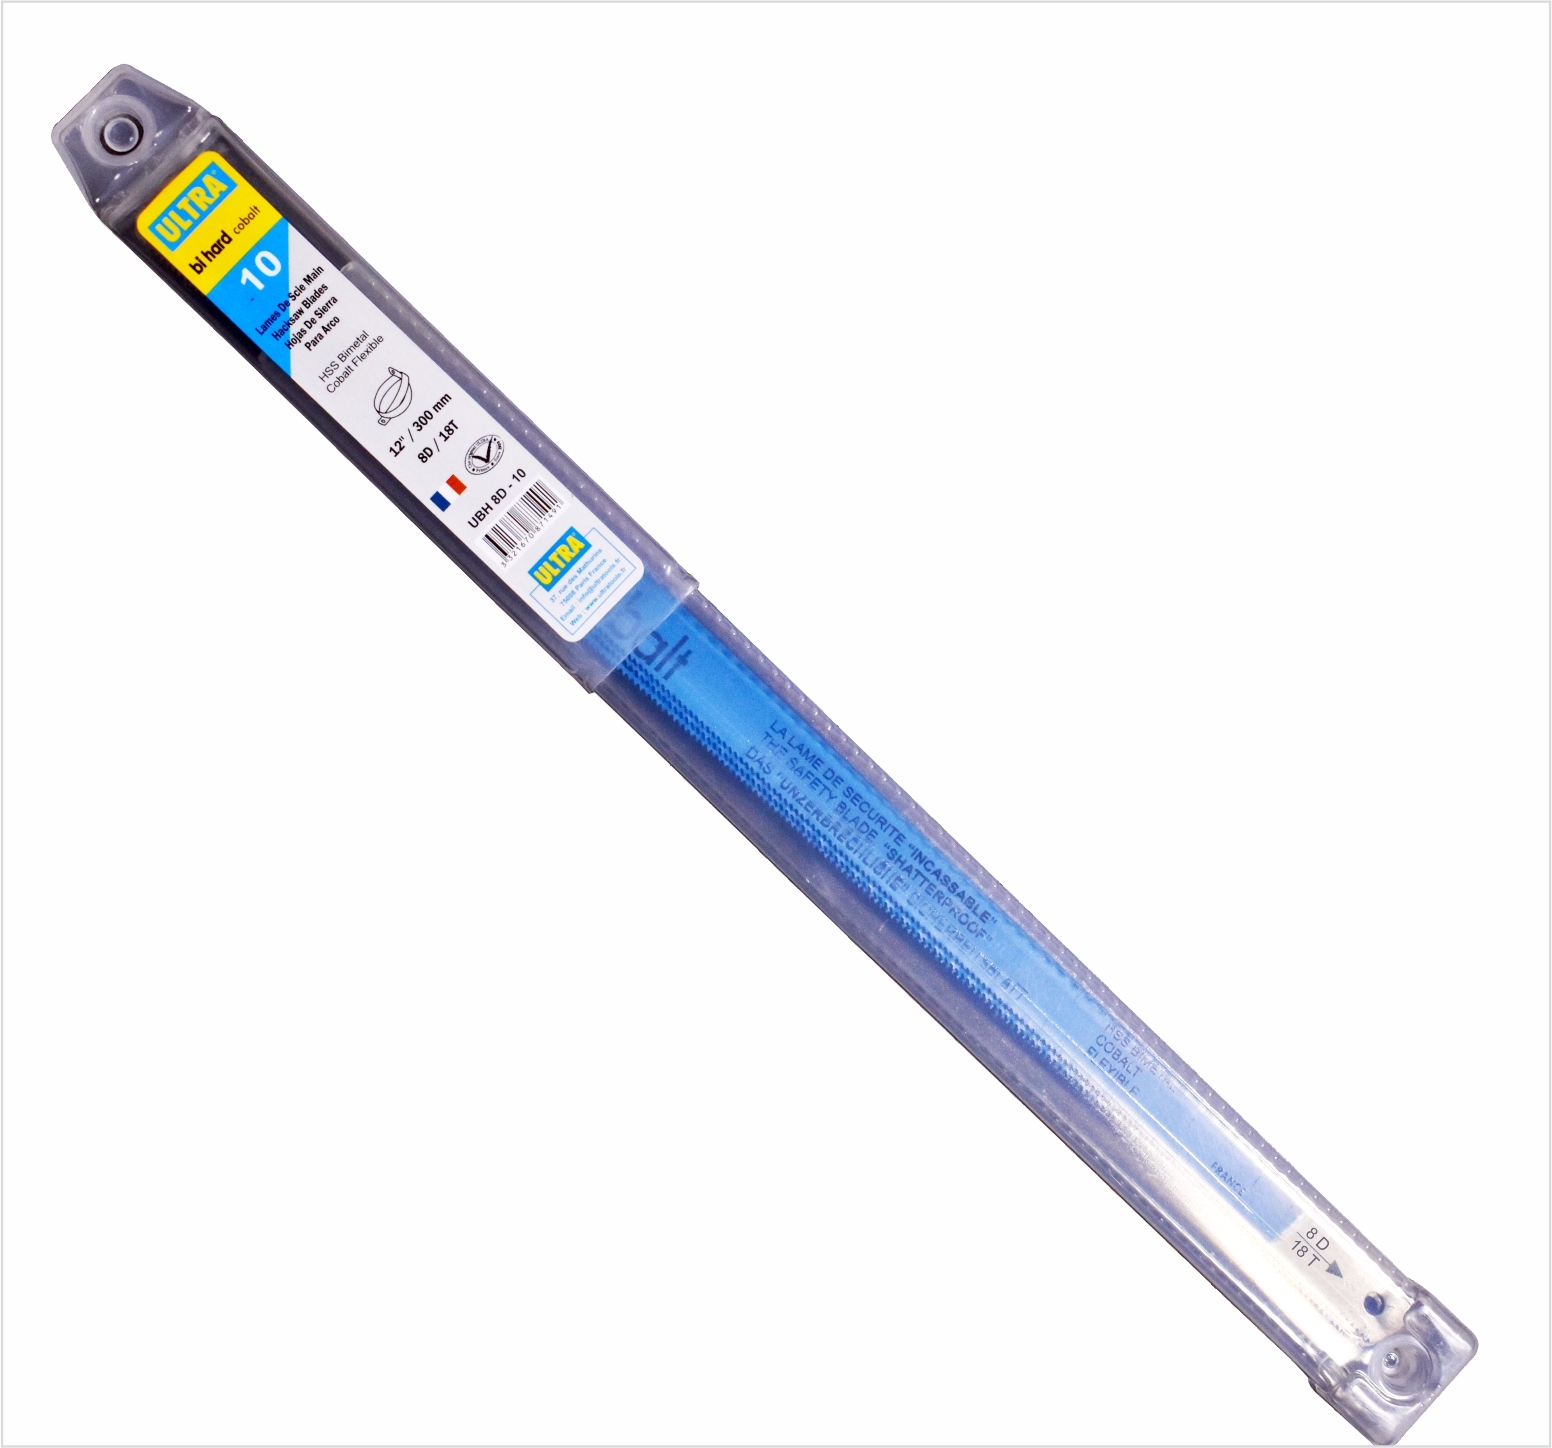 ULTRA Bi Hard HSS Bimetal 8% Cobalt Hand Hacksaw Blade